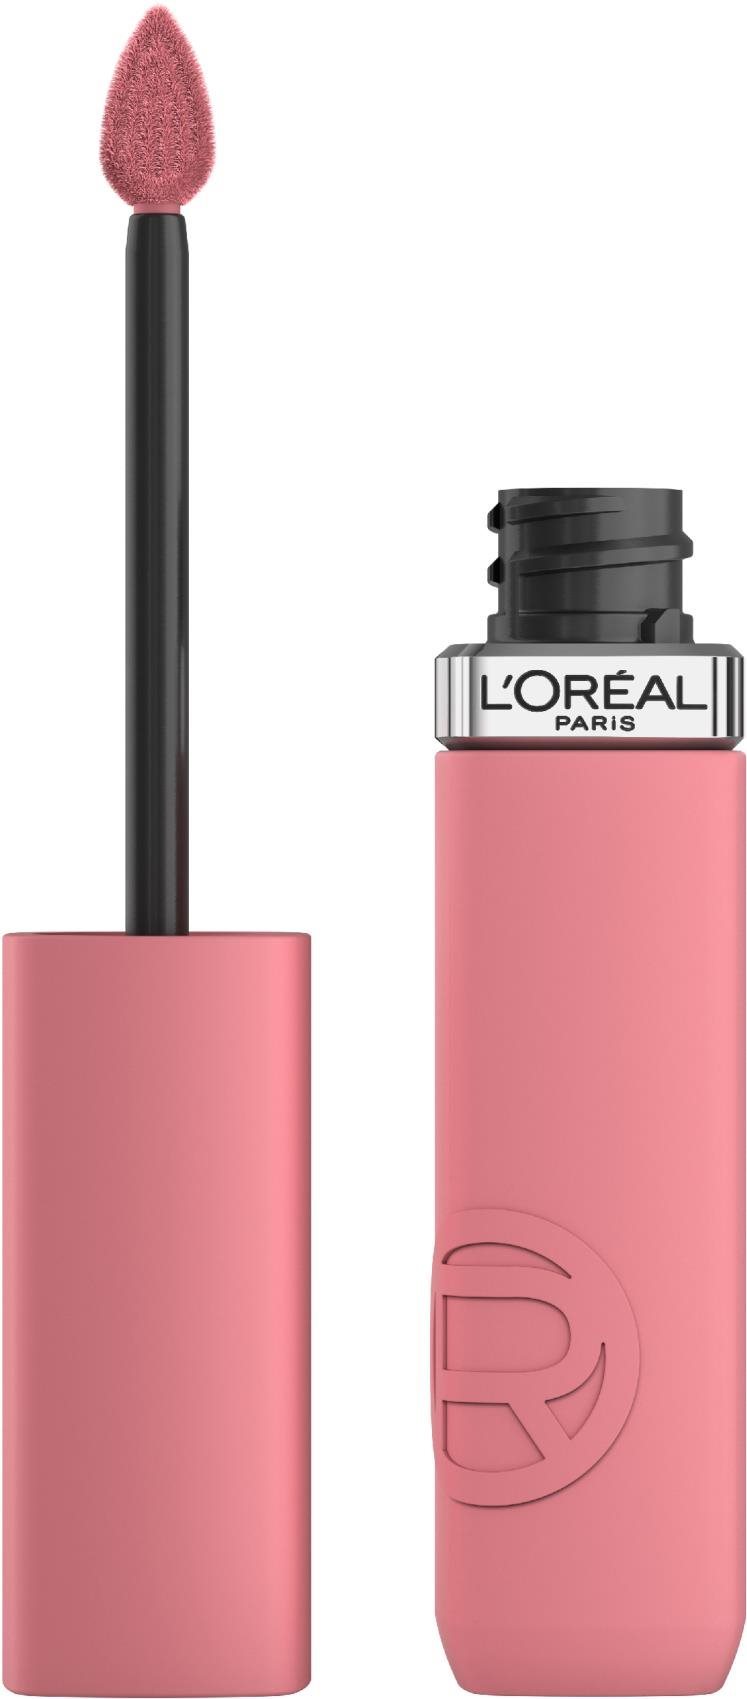 L'ORÉAL PARIS Infaillible Matte Resistance 200 Lipstick & Chill 5 ml